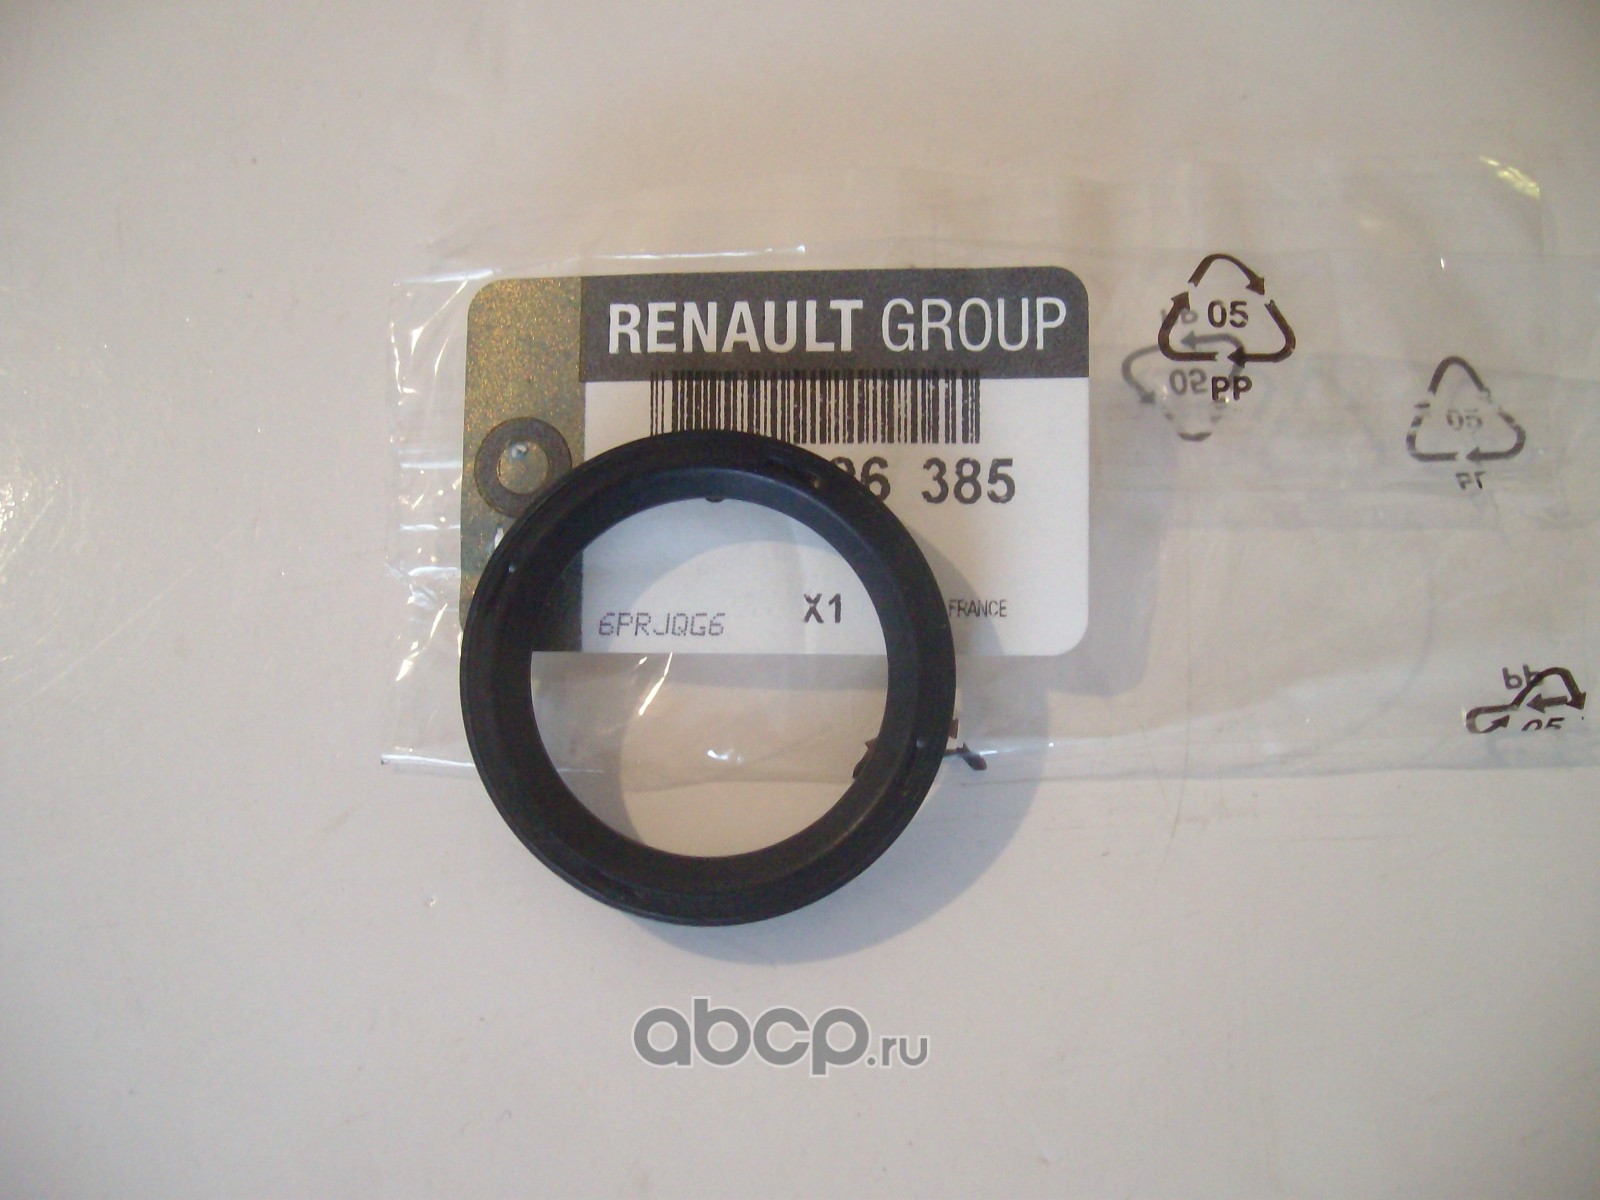 Кольца рено дастер 2.0. Уплотнительное кольцо Renault 7700106385. Уплотнительное кольцо фазорегулятора Renault 7700106385. 7700106385 Сальник клапана фазорегулятора. Уплотнительное кольцо Рено Дастер 2.0.